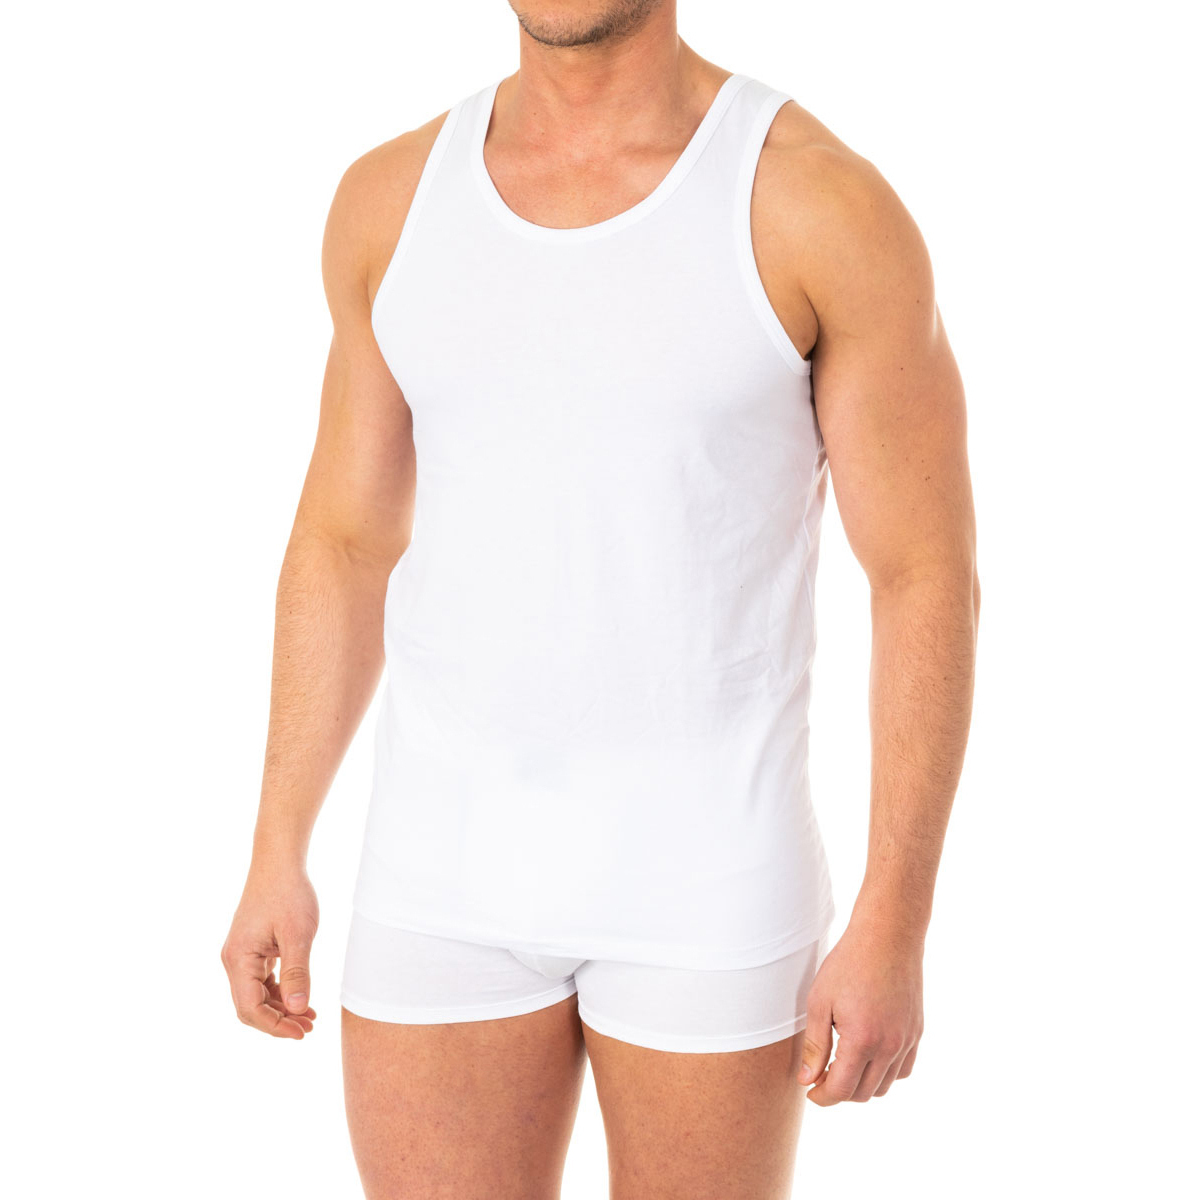 Ropa interior Hombre Camiseta interior Abanderado A040Z-BLANCO Blanco